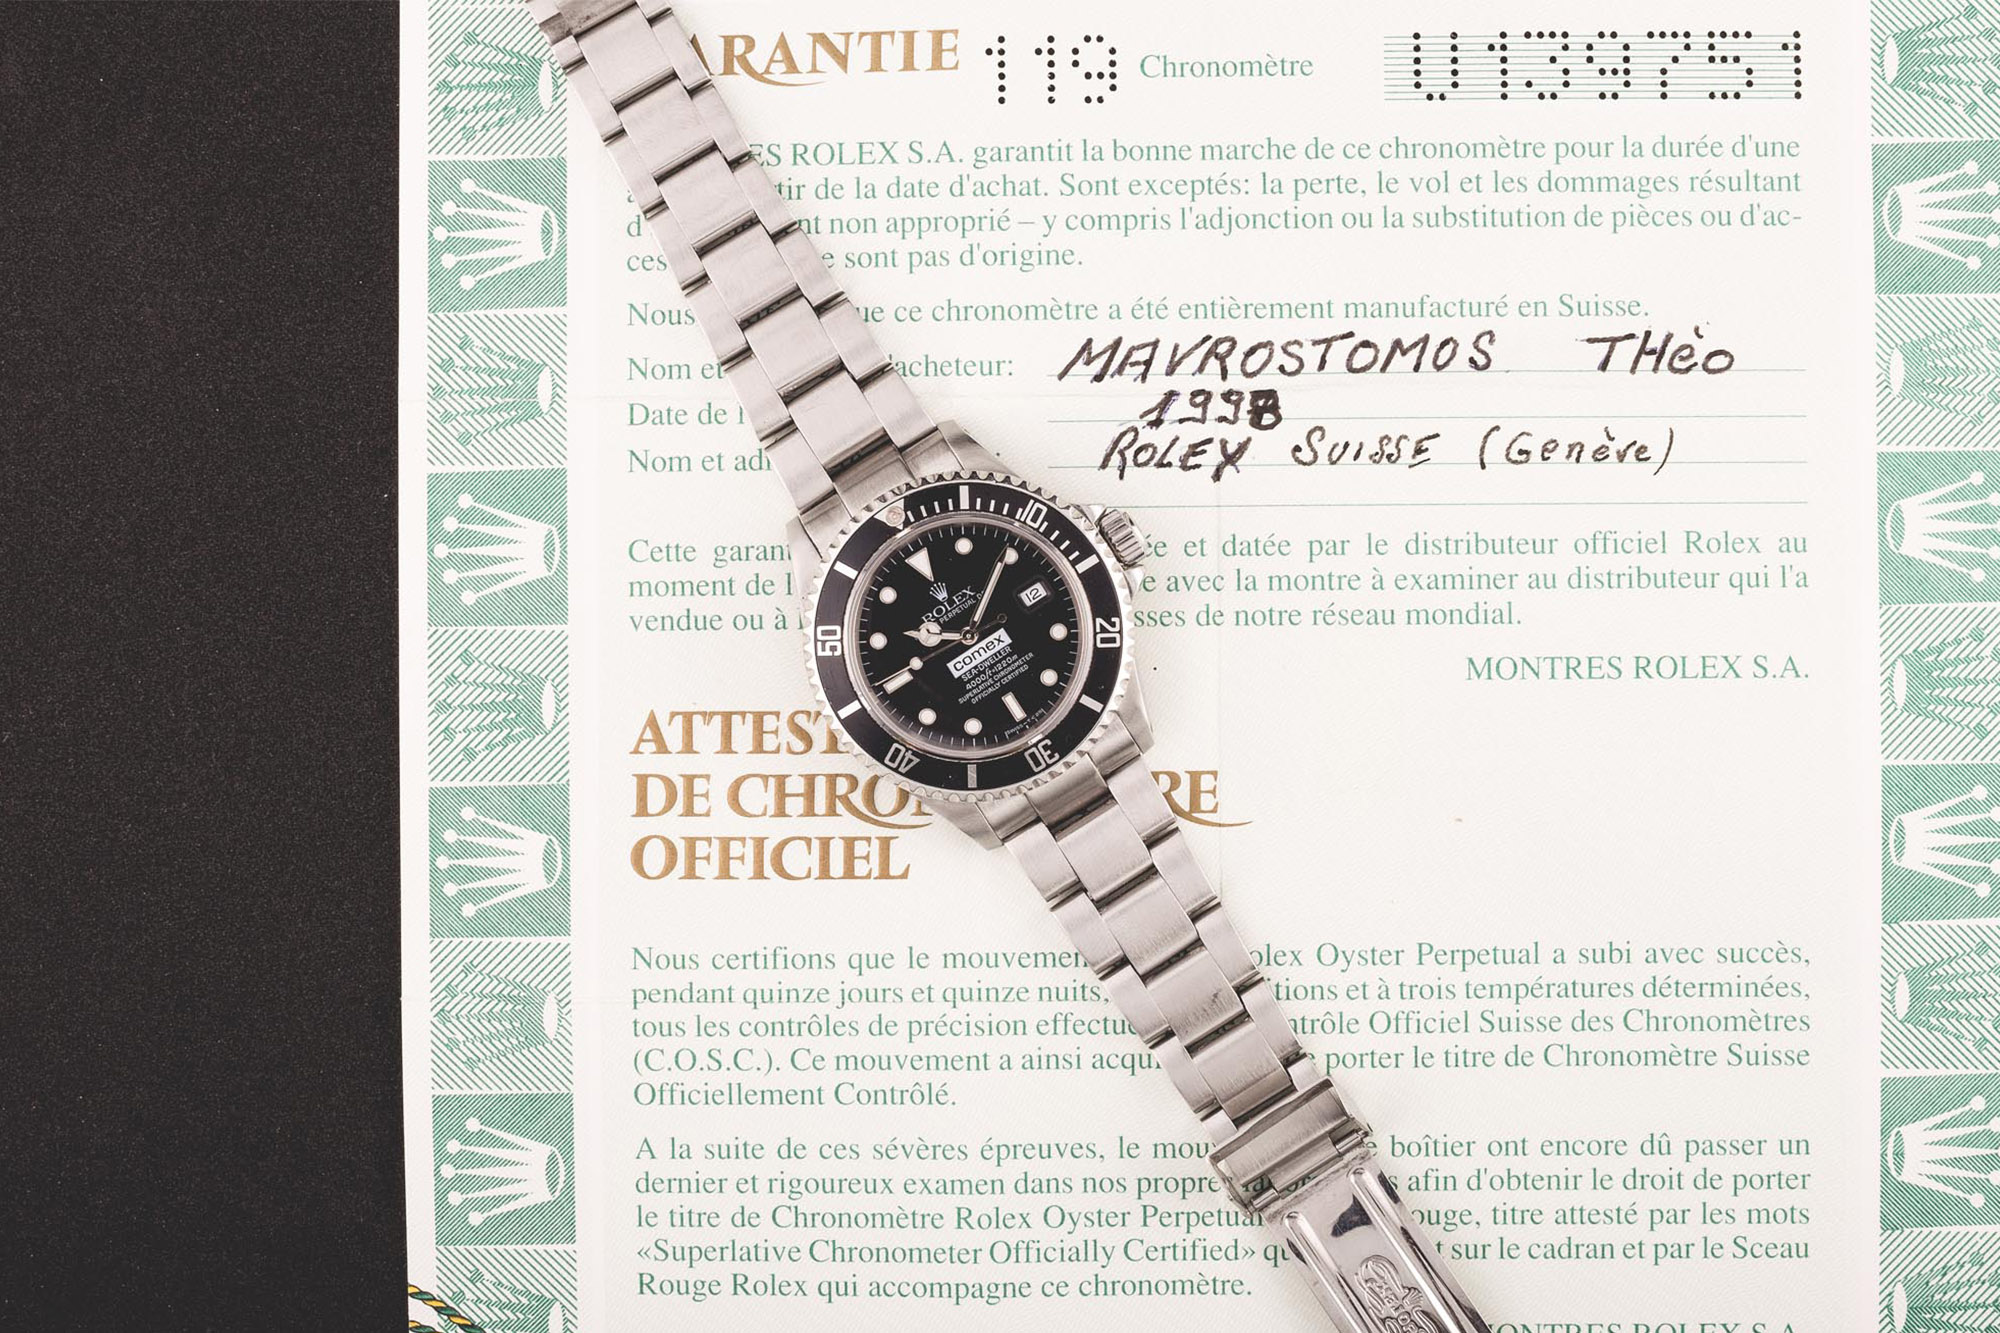 La Rolex COMEX de Thèo Mavrostomos : “L’homme le plus profond du monde”